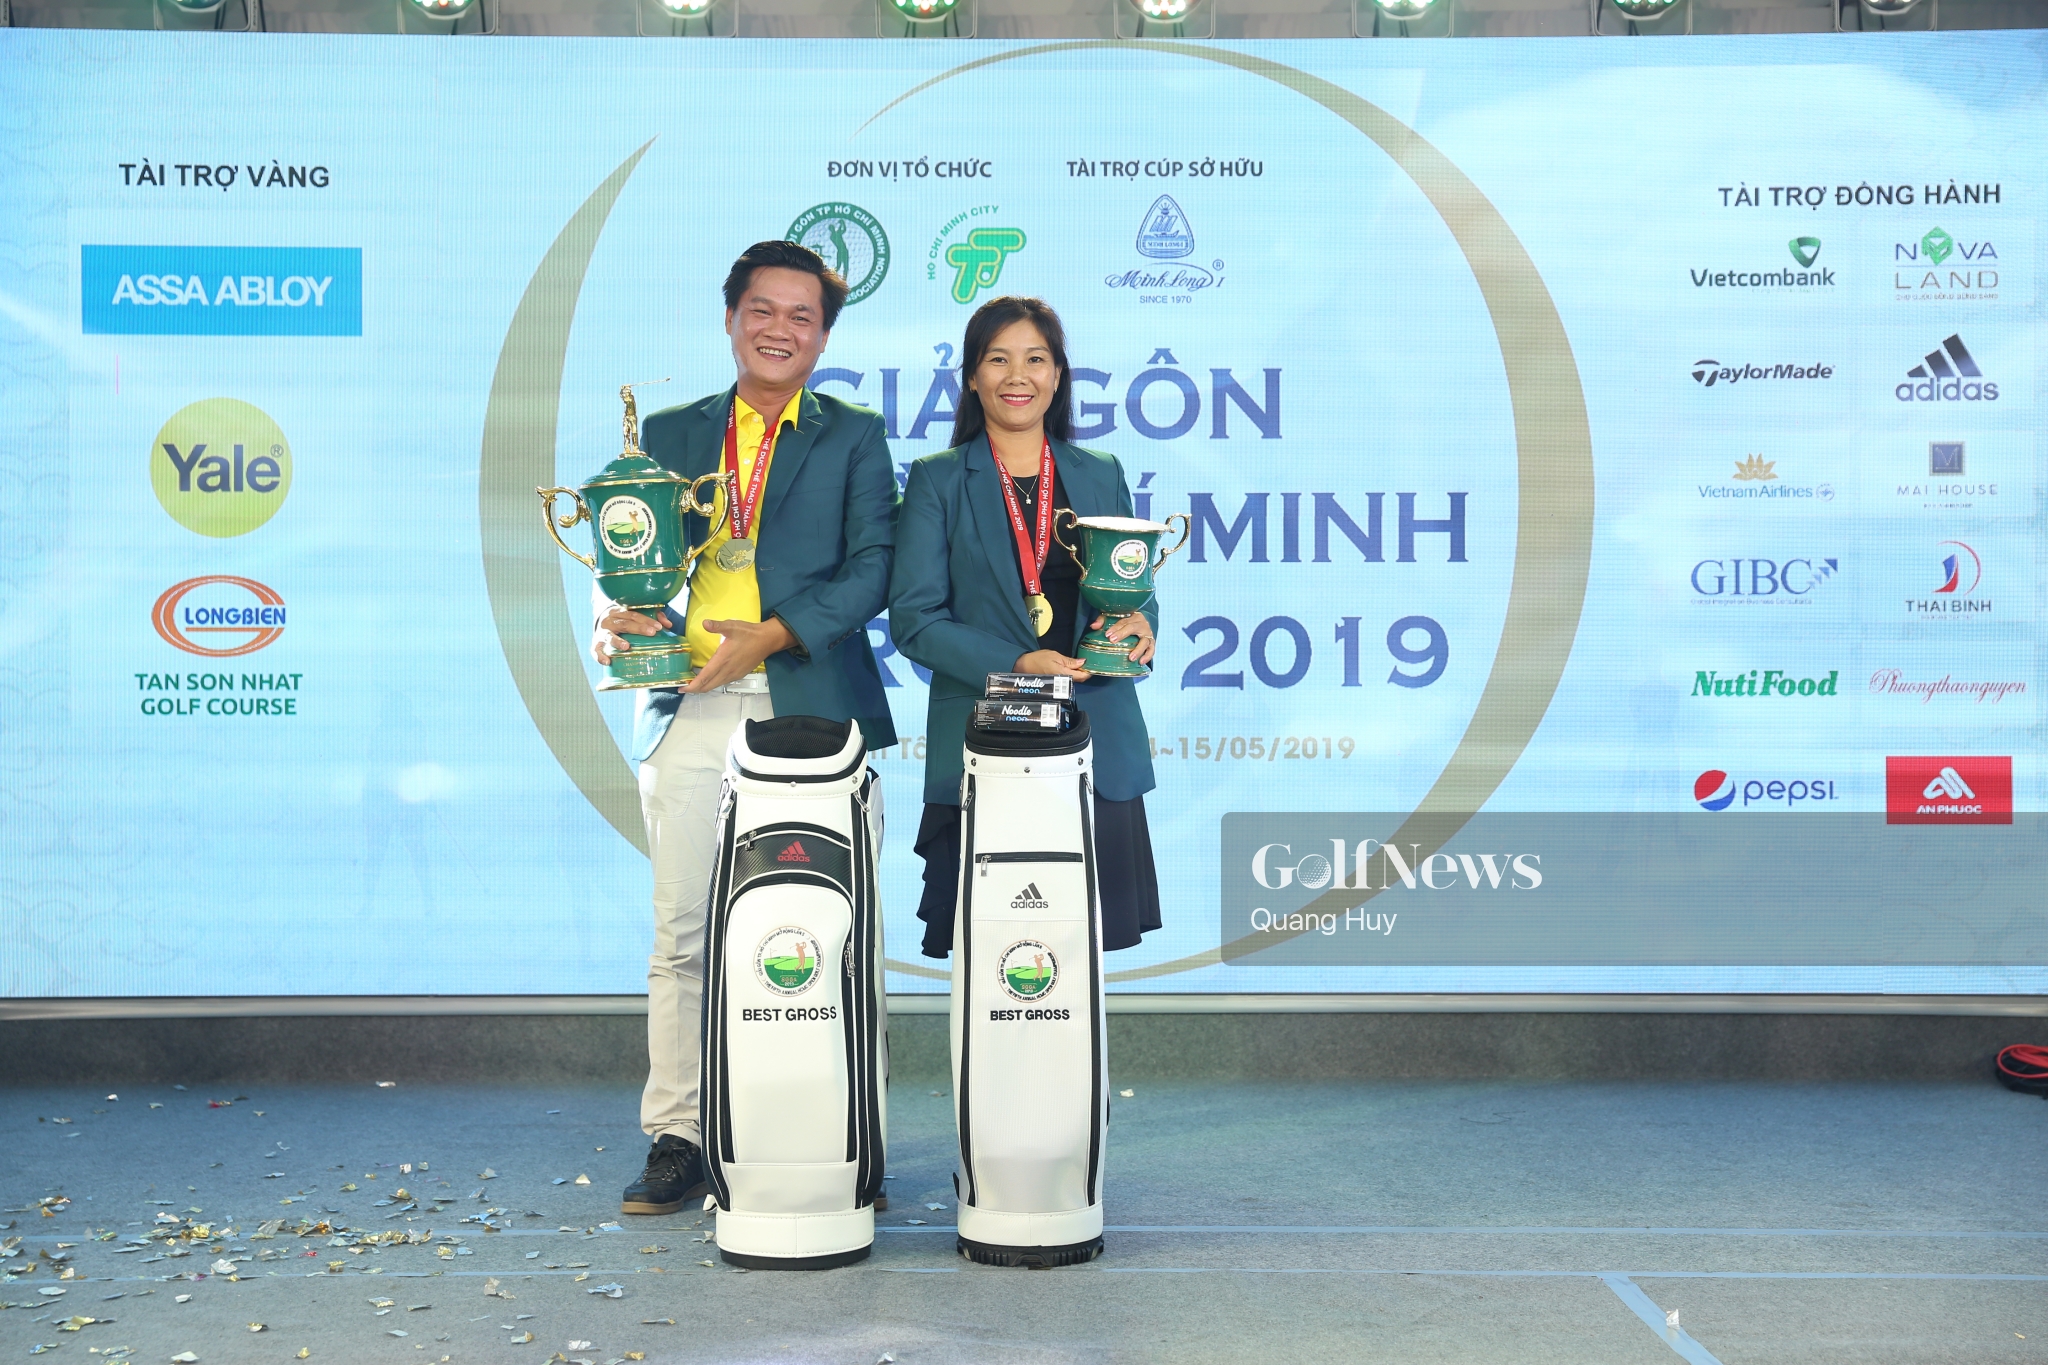 Nông Trung Hiếu và Nguyễn Thị Ngọc Dung giành chức vô địch Giải TP. HCM Mở rộng 2019